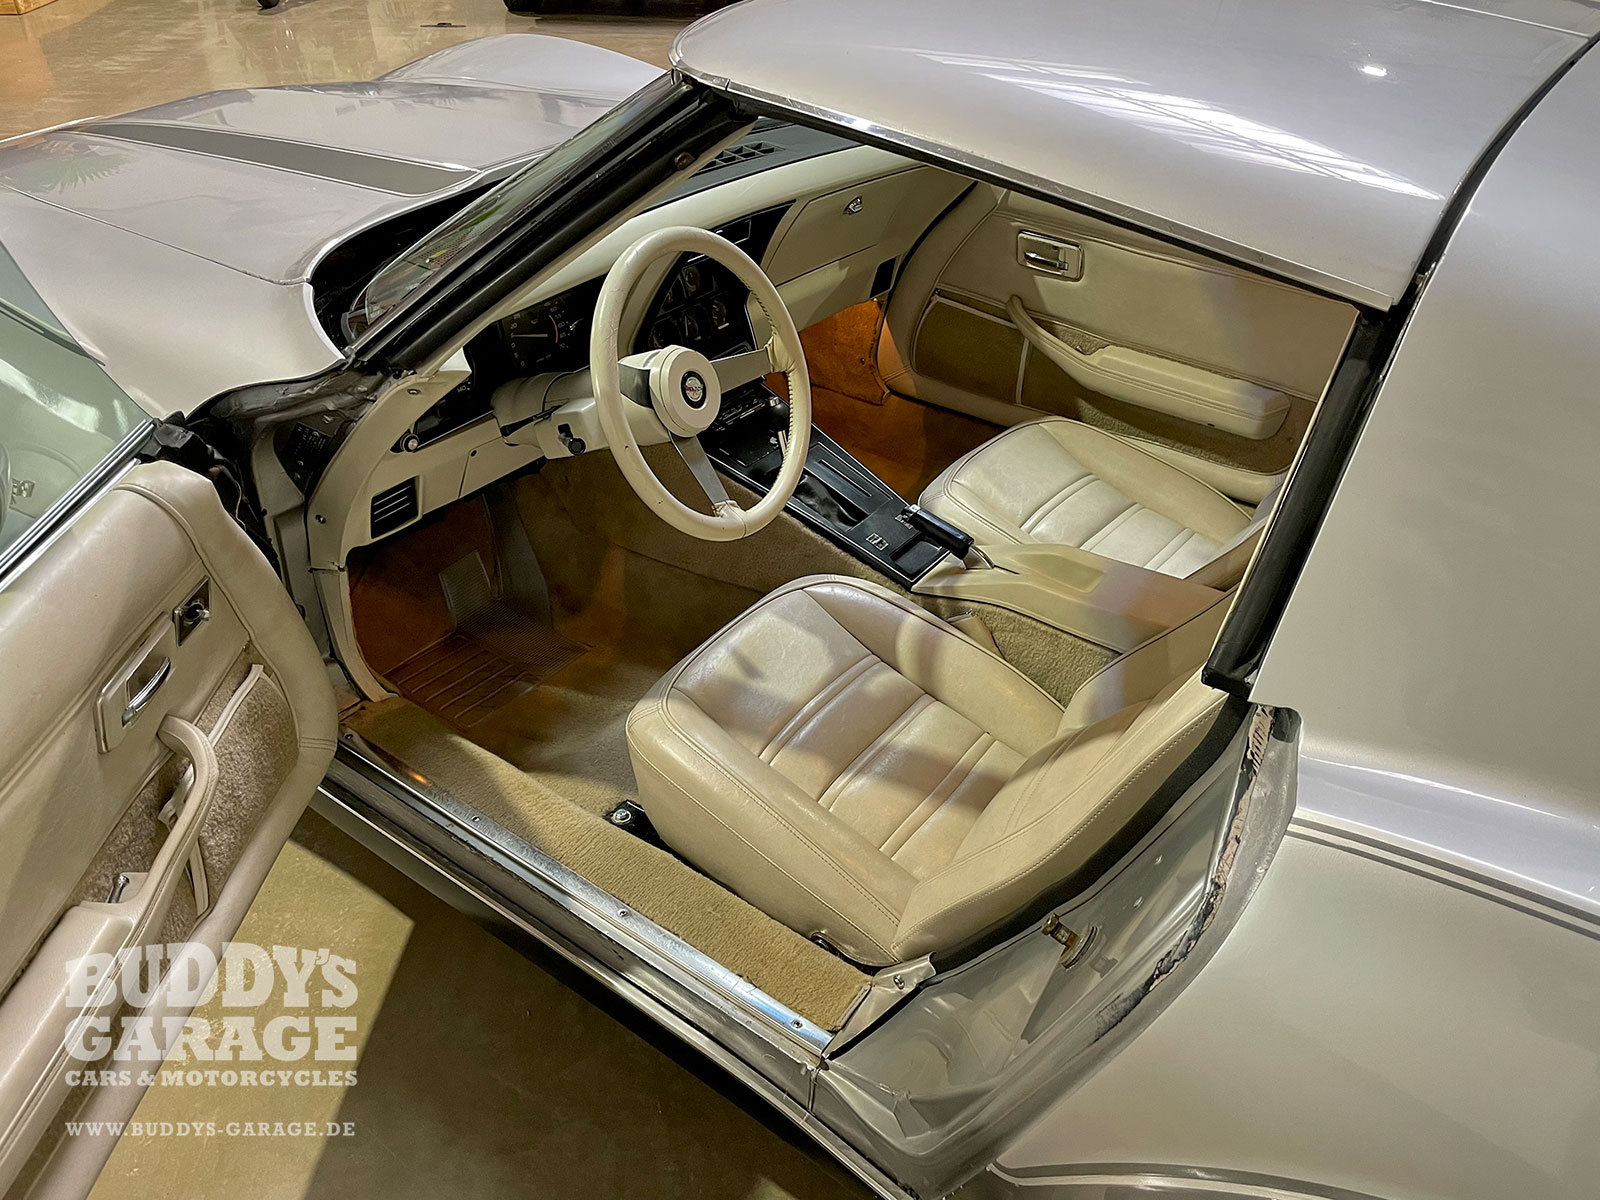 Corvette C3 25th Anniversary | Buddy's Garage Bad Oeynhausen